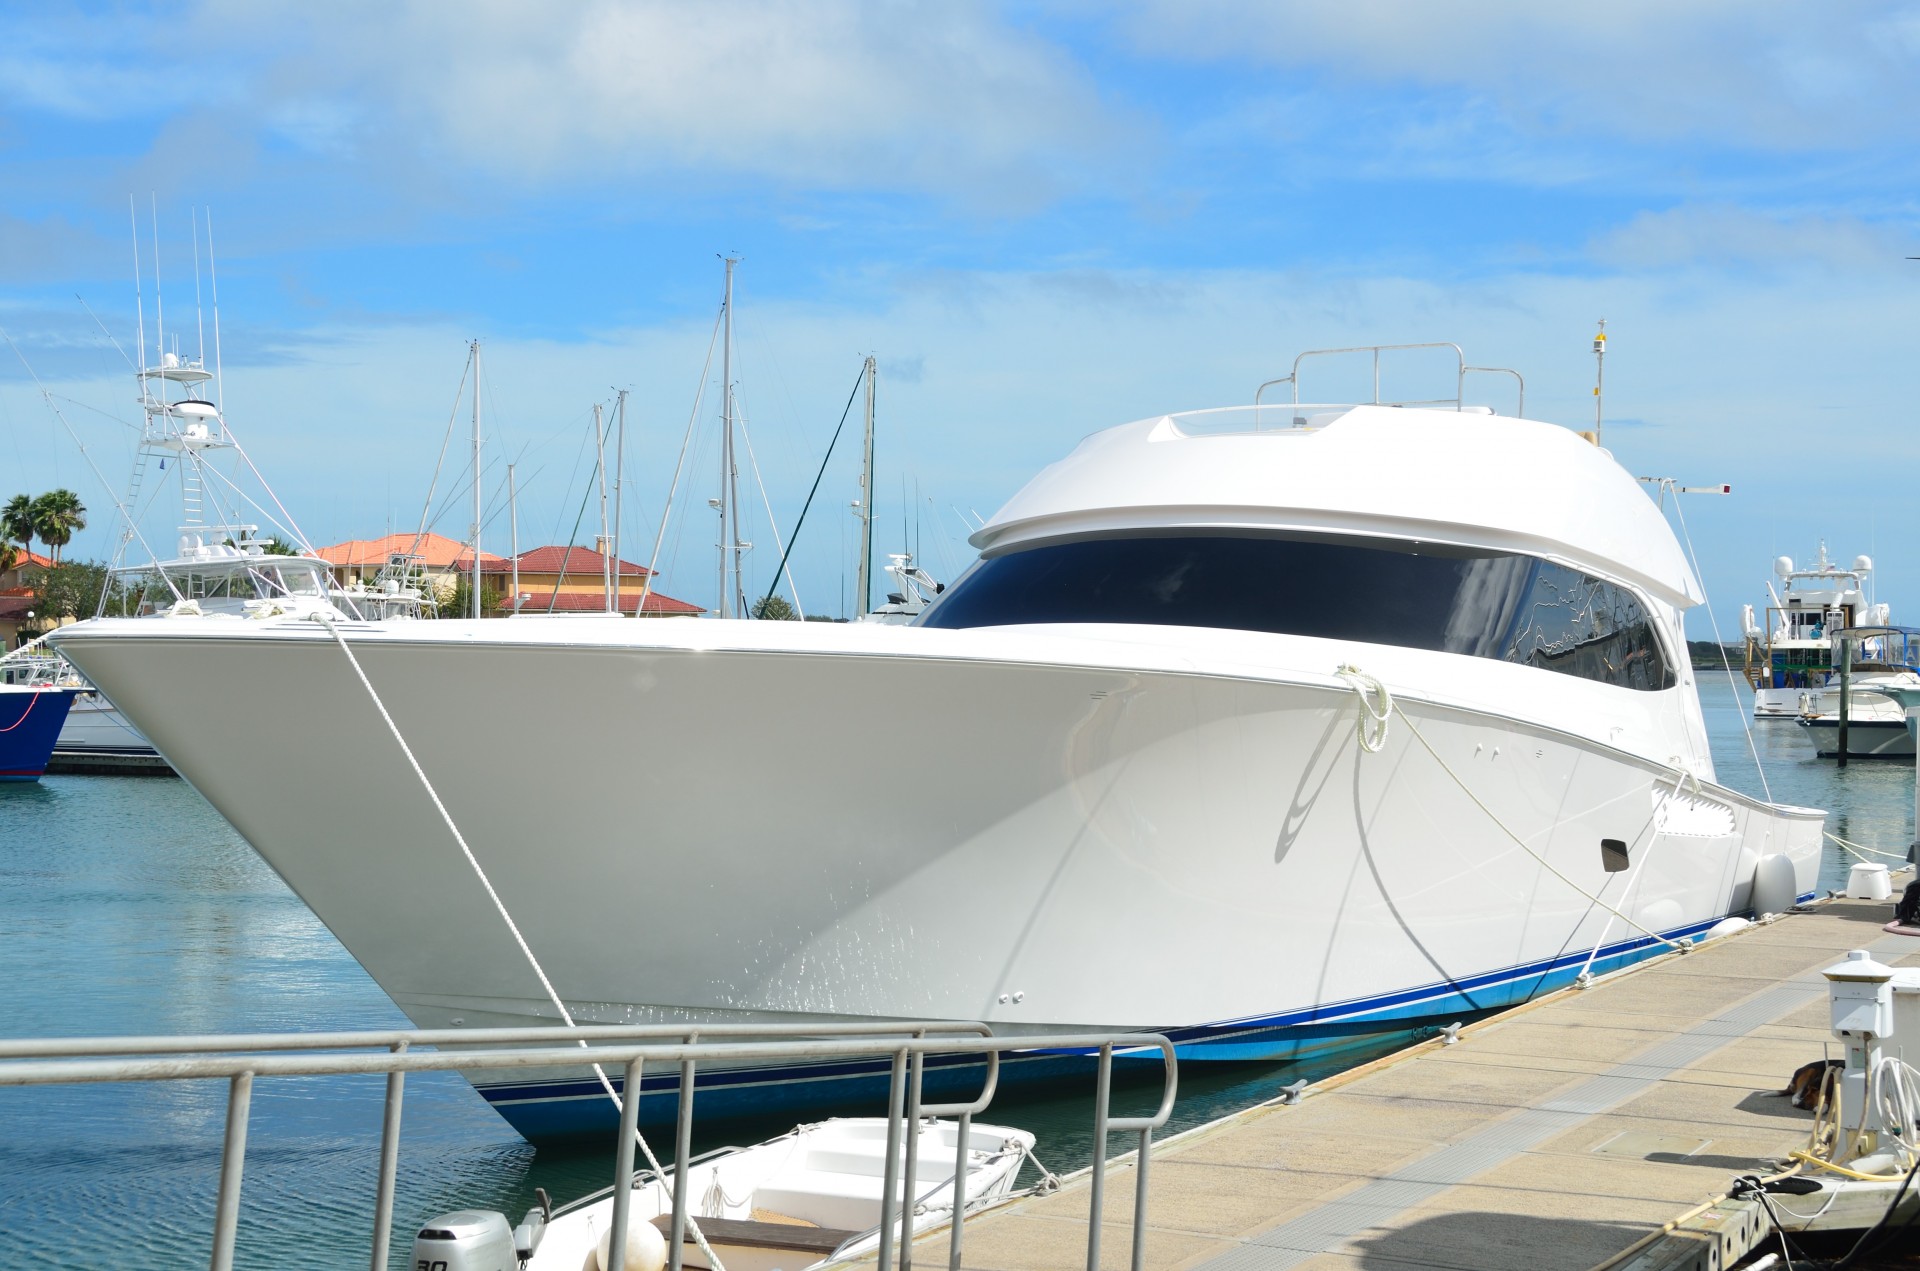 marina boat luxury yacht free photo